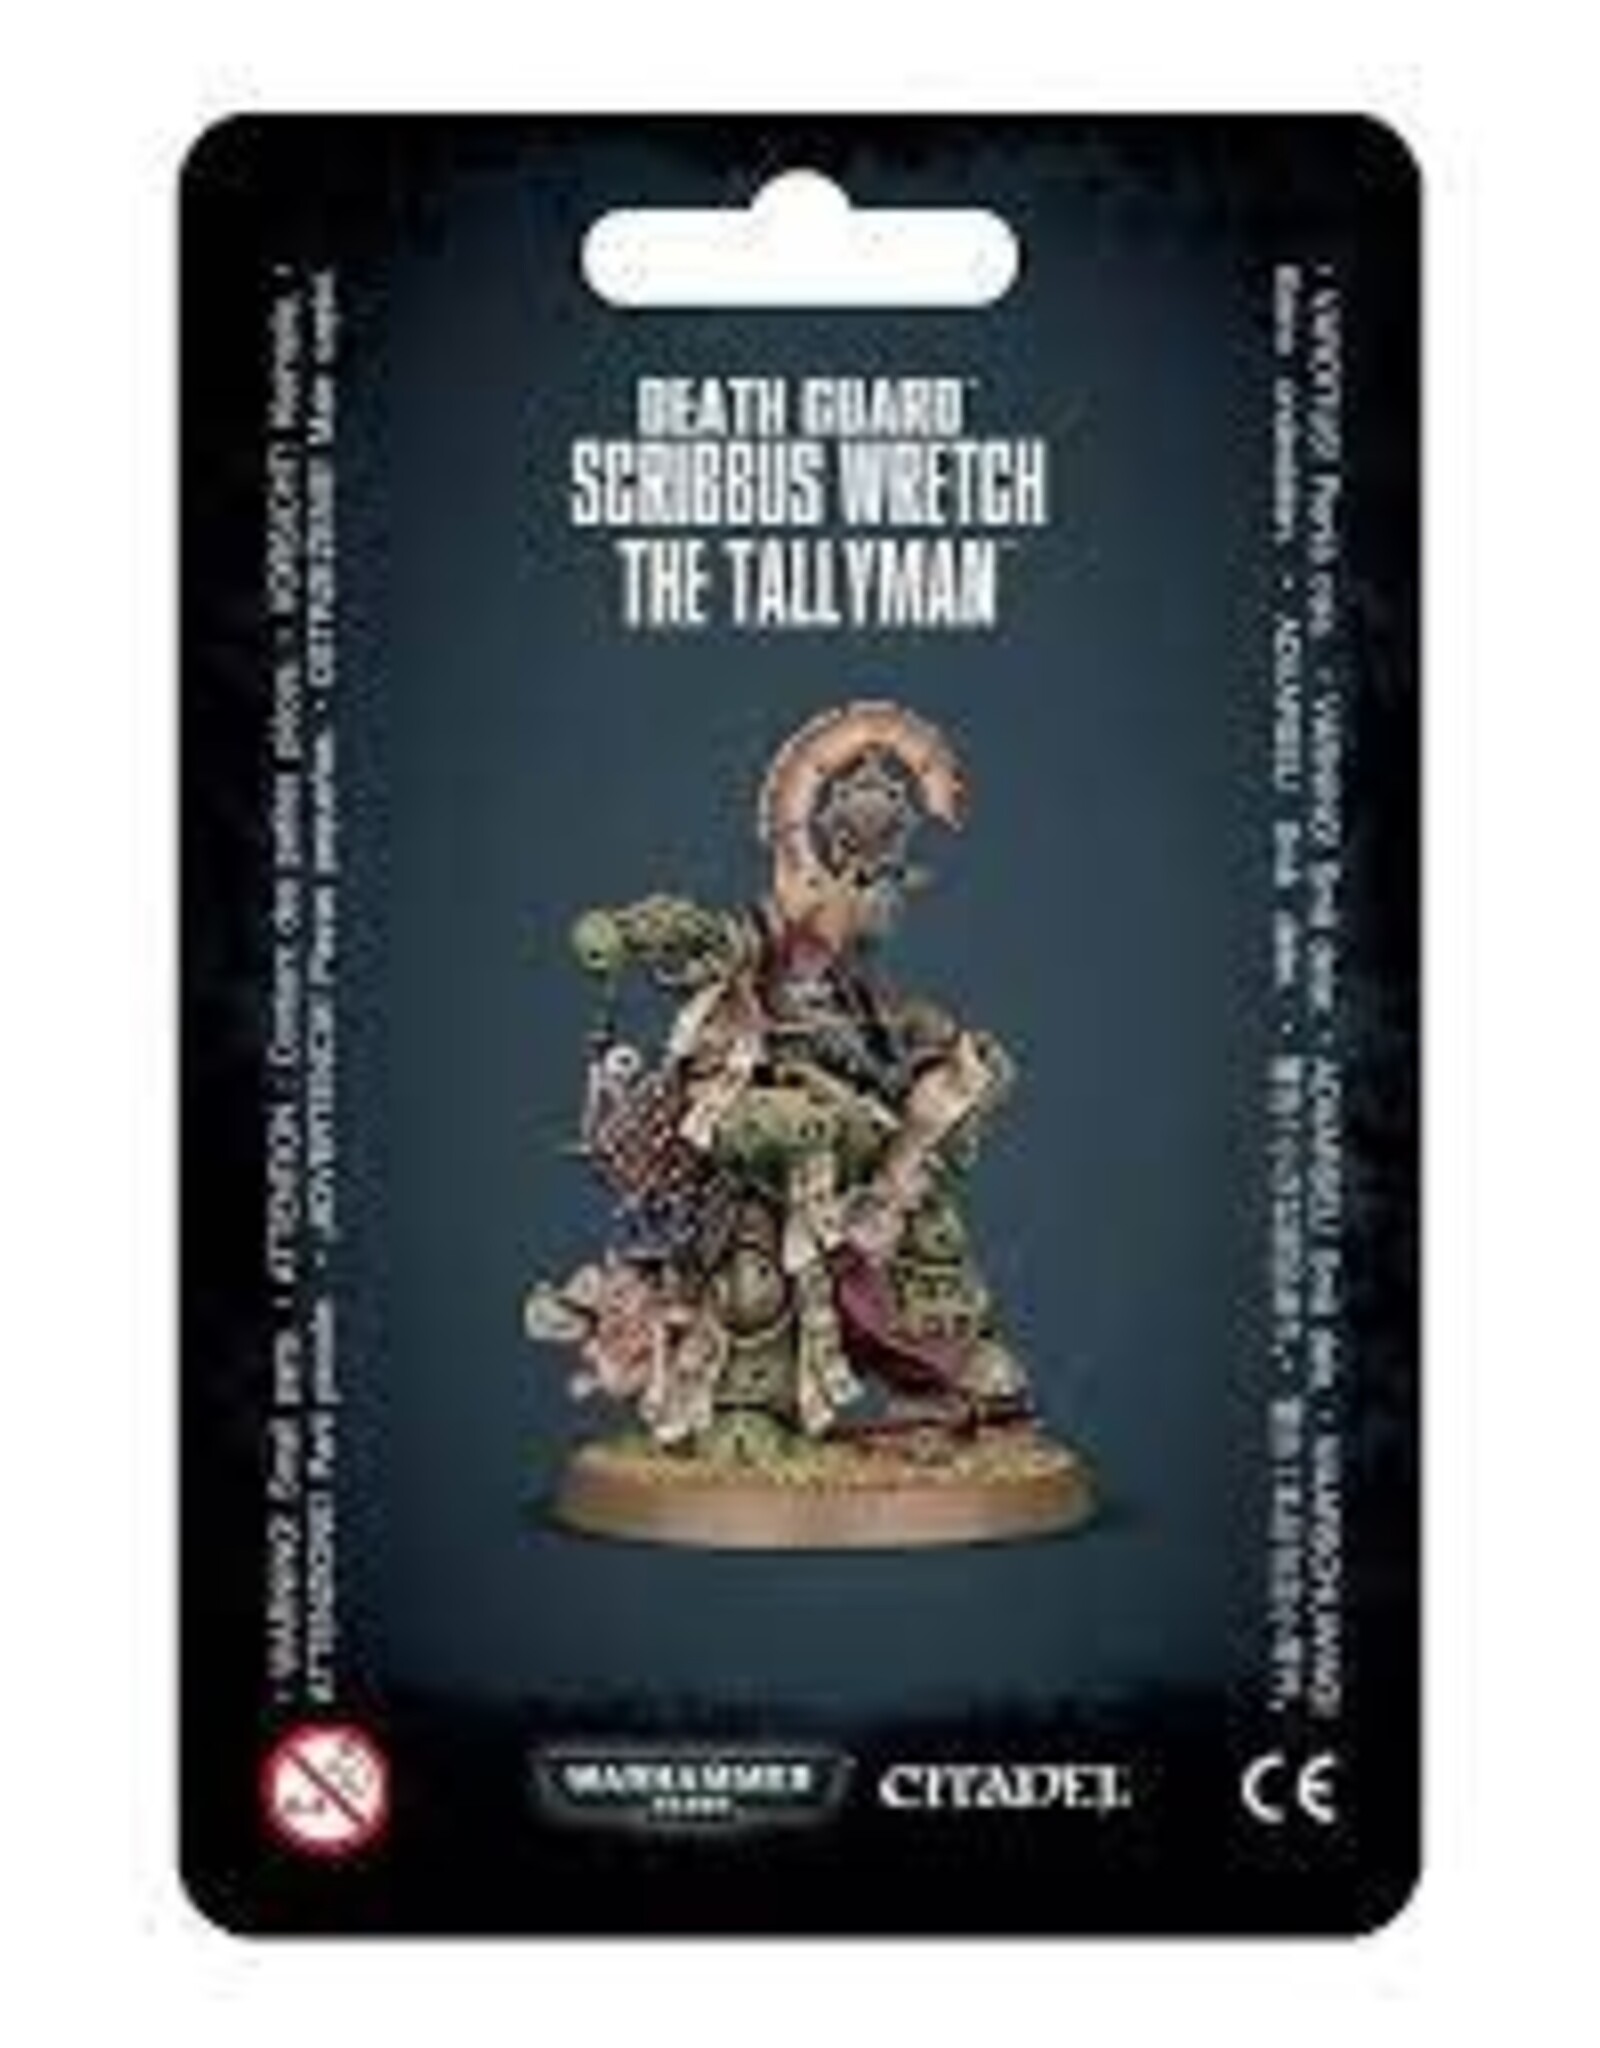 Warhammer 40K Death Guard: Scribbus Wretch the Tallyman